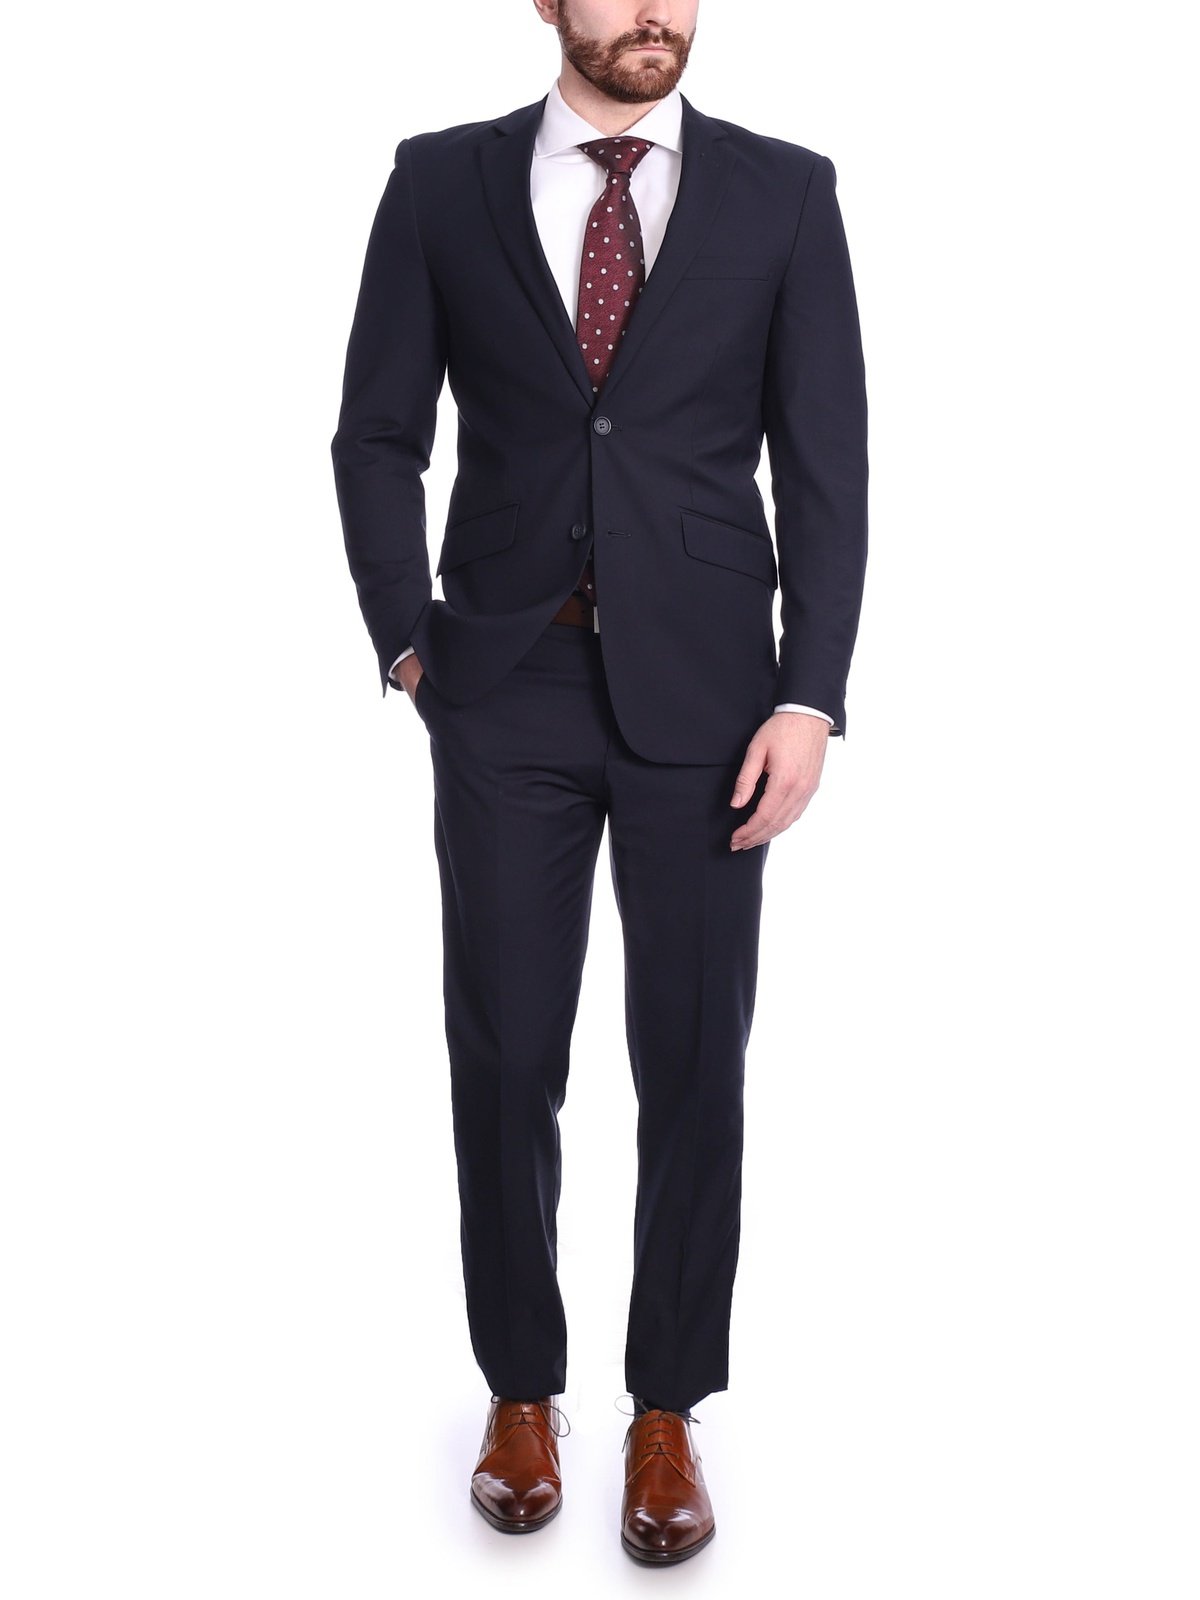 Wehilion Suit for Men Vintage Retro Wedding Suits Set Slim Fit 3 Pieces  Jacket Blazer Groom Tuxedo Prom Mens Suit Royal Blue M - Walmart.com